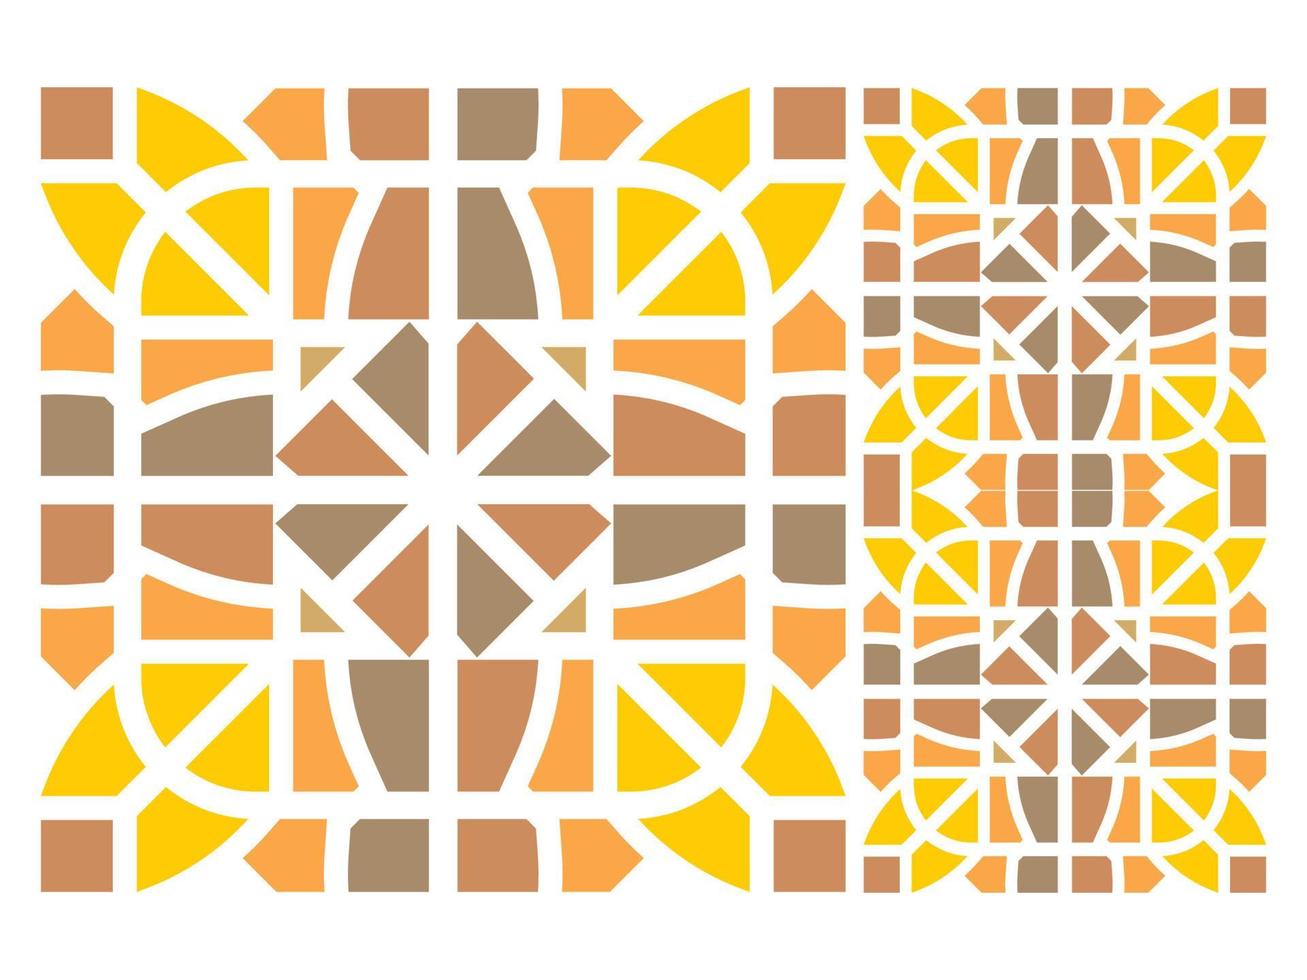 vector de mosaico de azulejo de diseño de patrones sin fisuras gratis